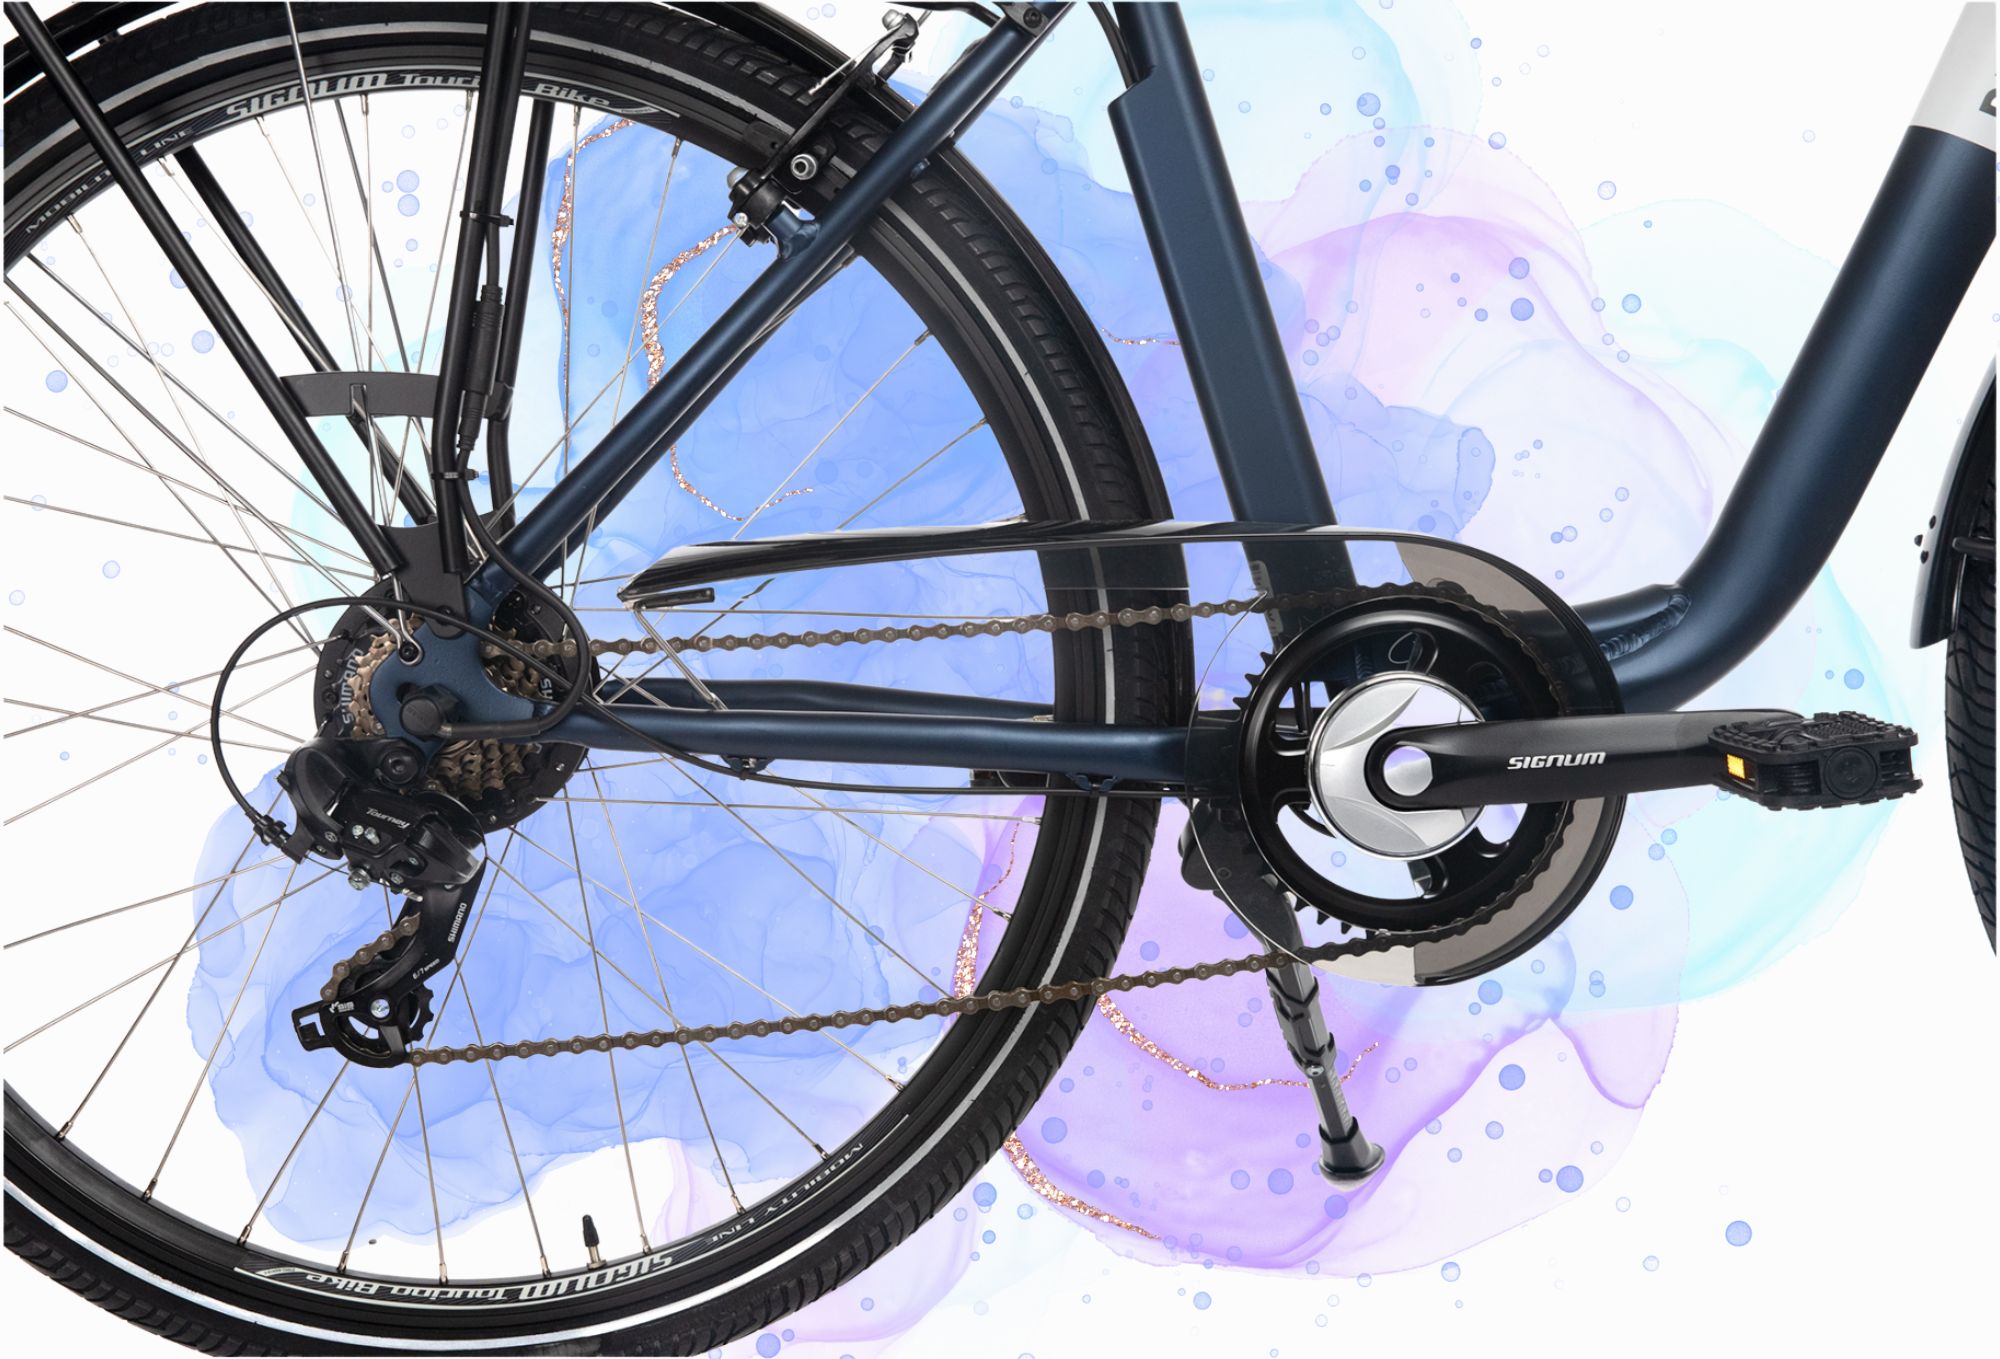 Bicyklet : la gamme de vélos électriques urbains et abordables d’Alltricks